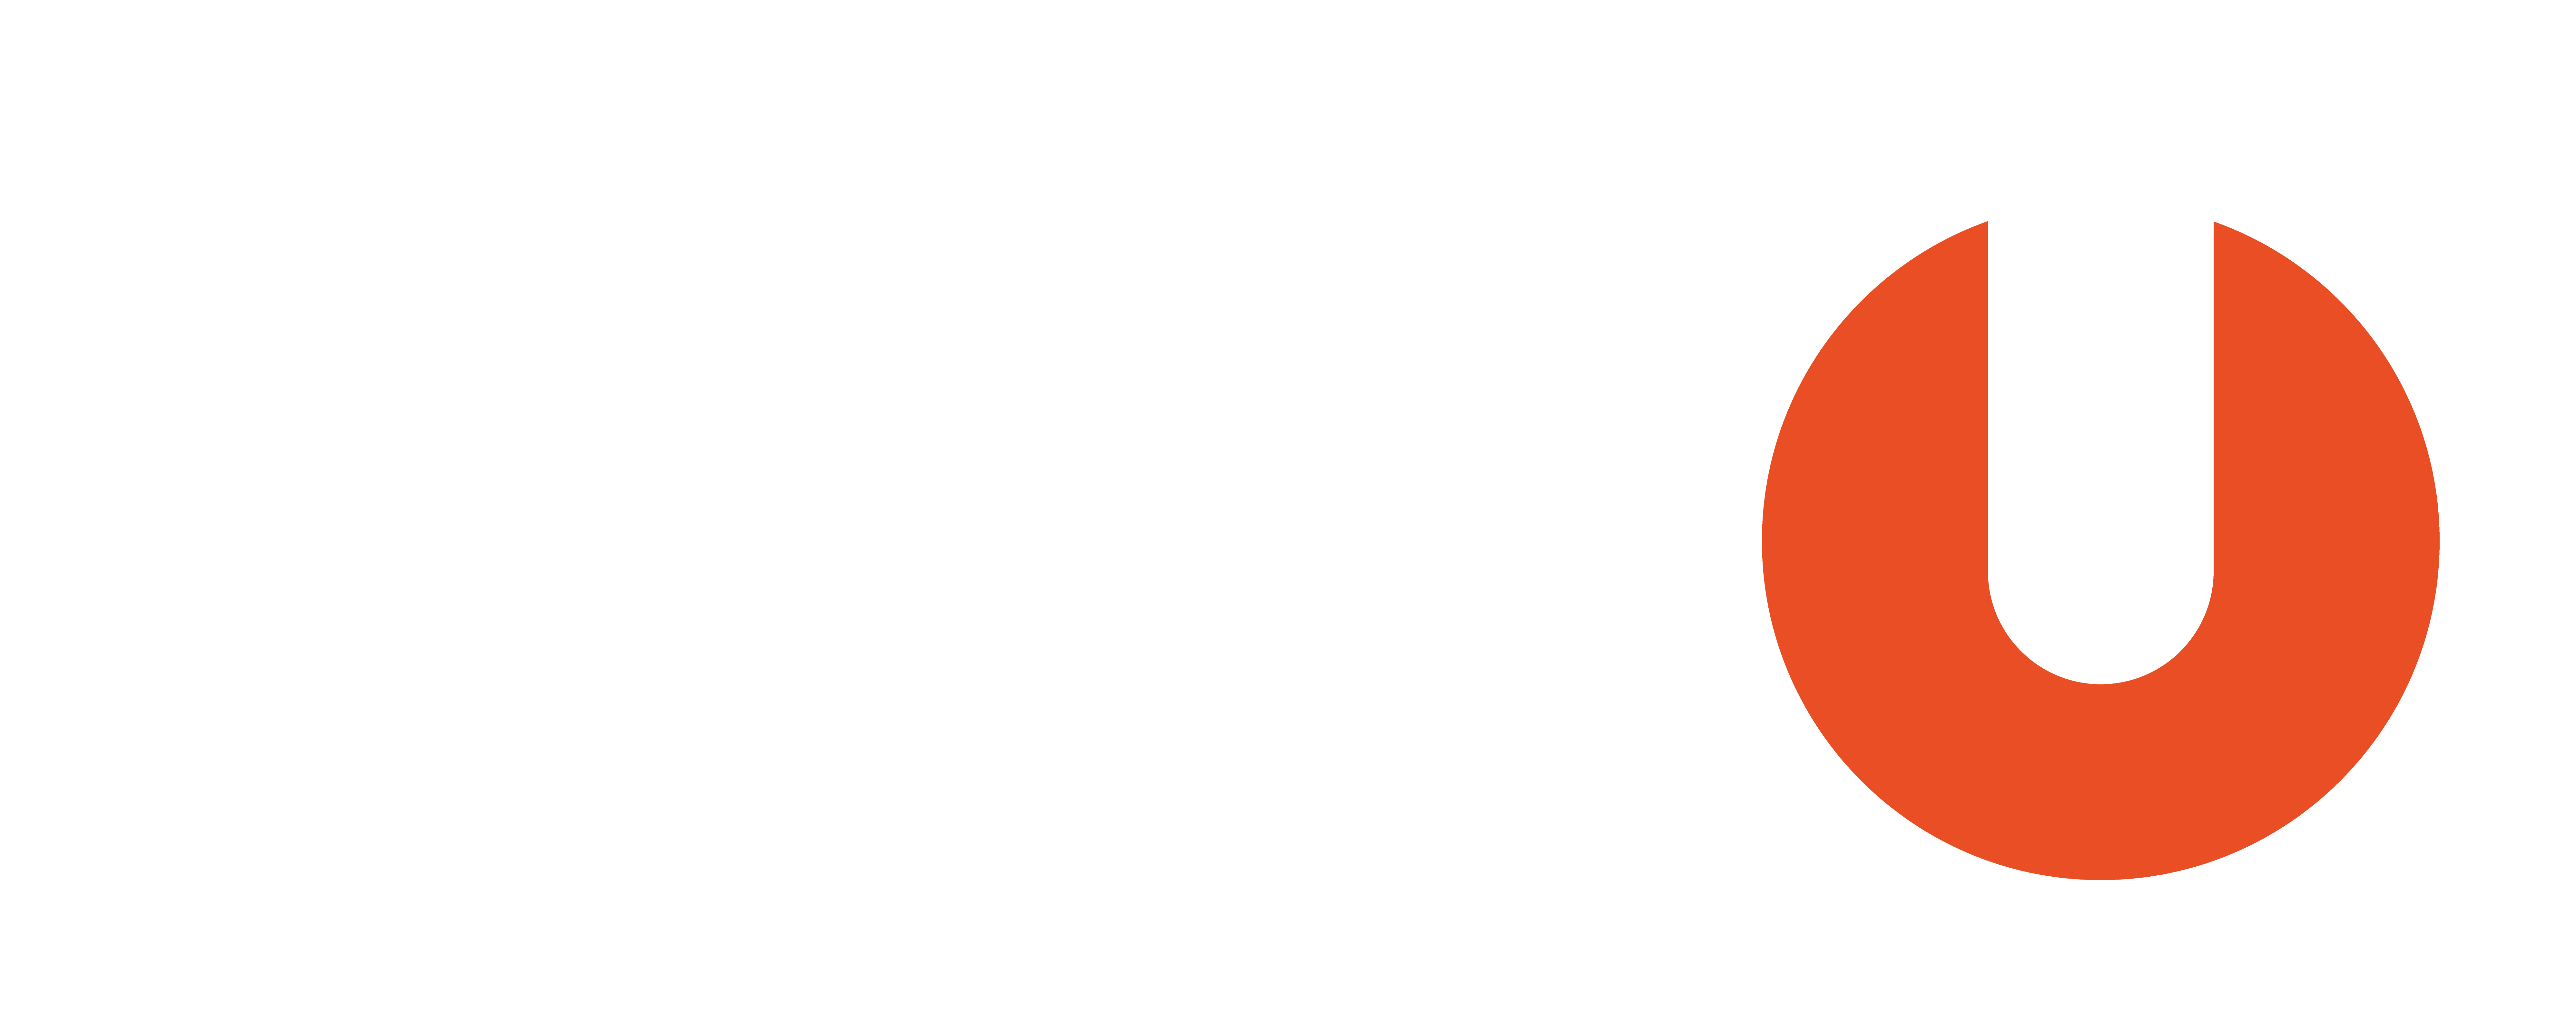 Mitglied-der-SPORTUNION-Logo-2c-quer-invertiert